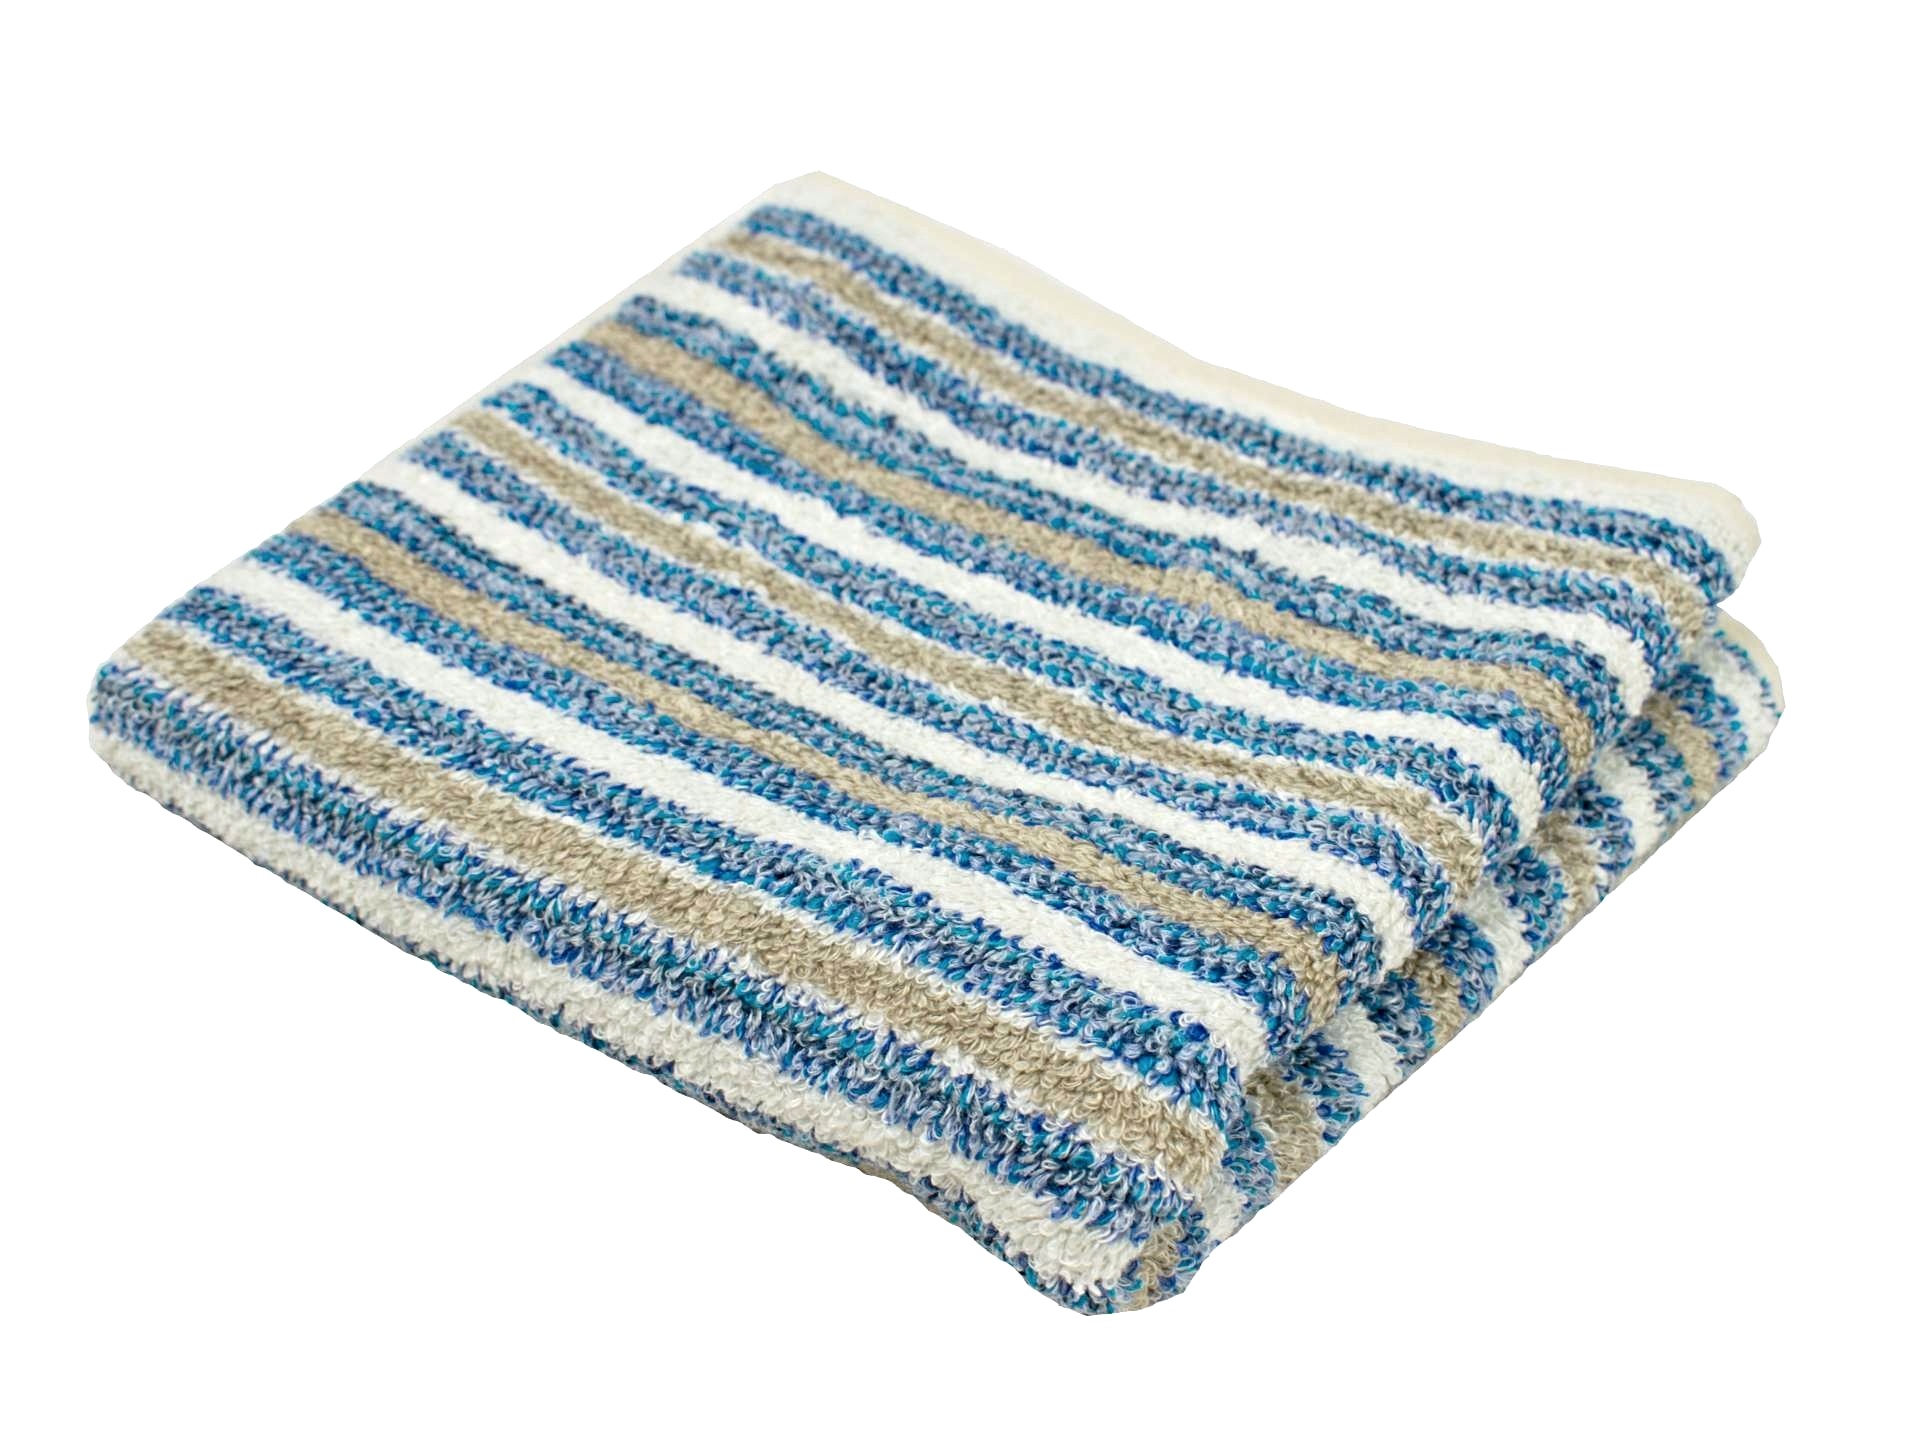 Lněný ručník měkký modrý pruh 65 x 125 cm